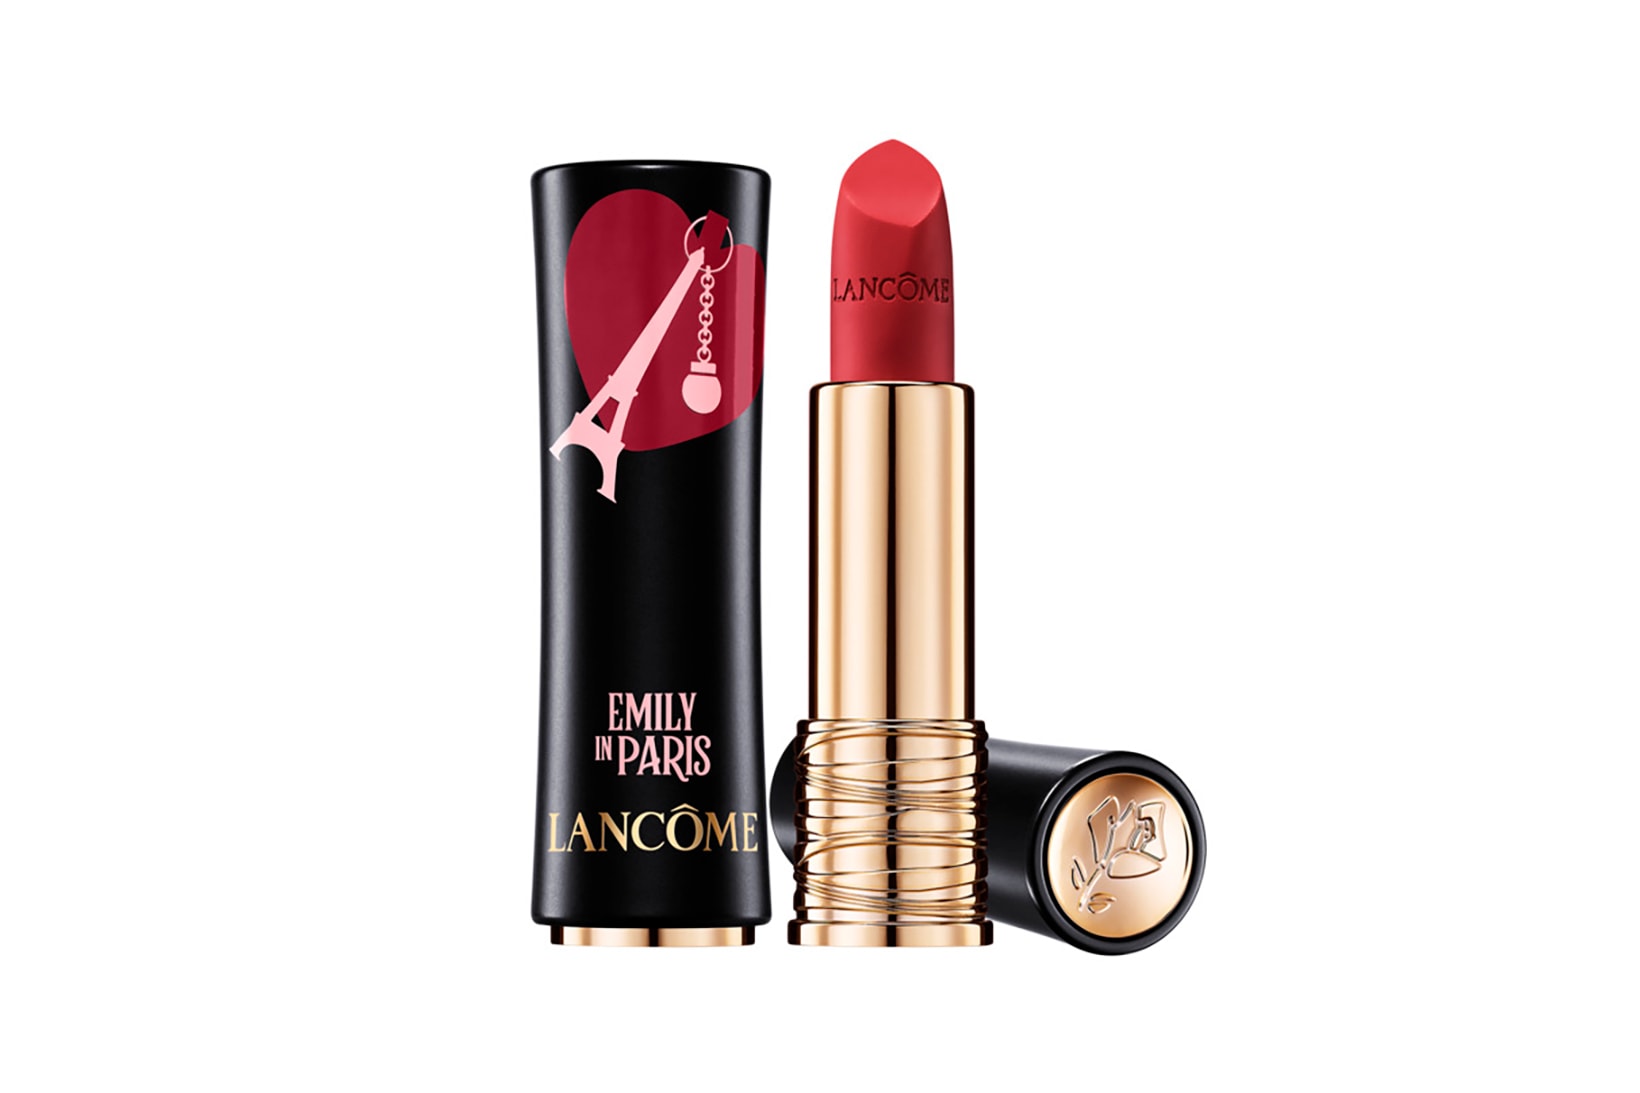 Emily in Paris Lancôme Lily Collins Netflix TV Show Makeup Lipstick